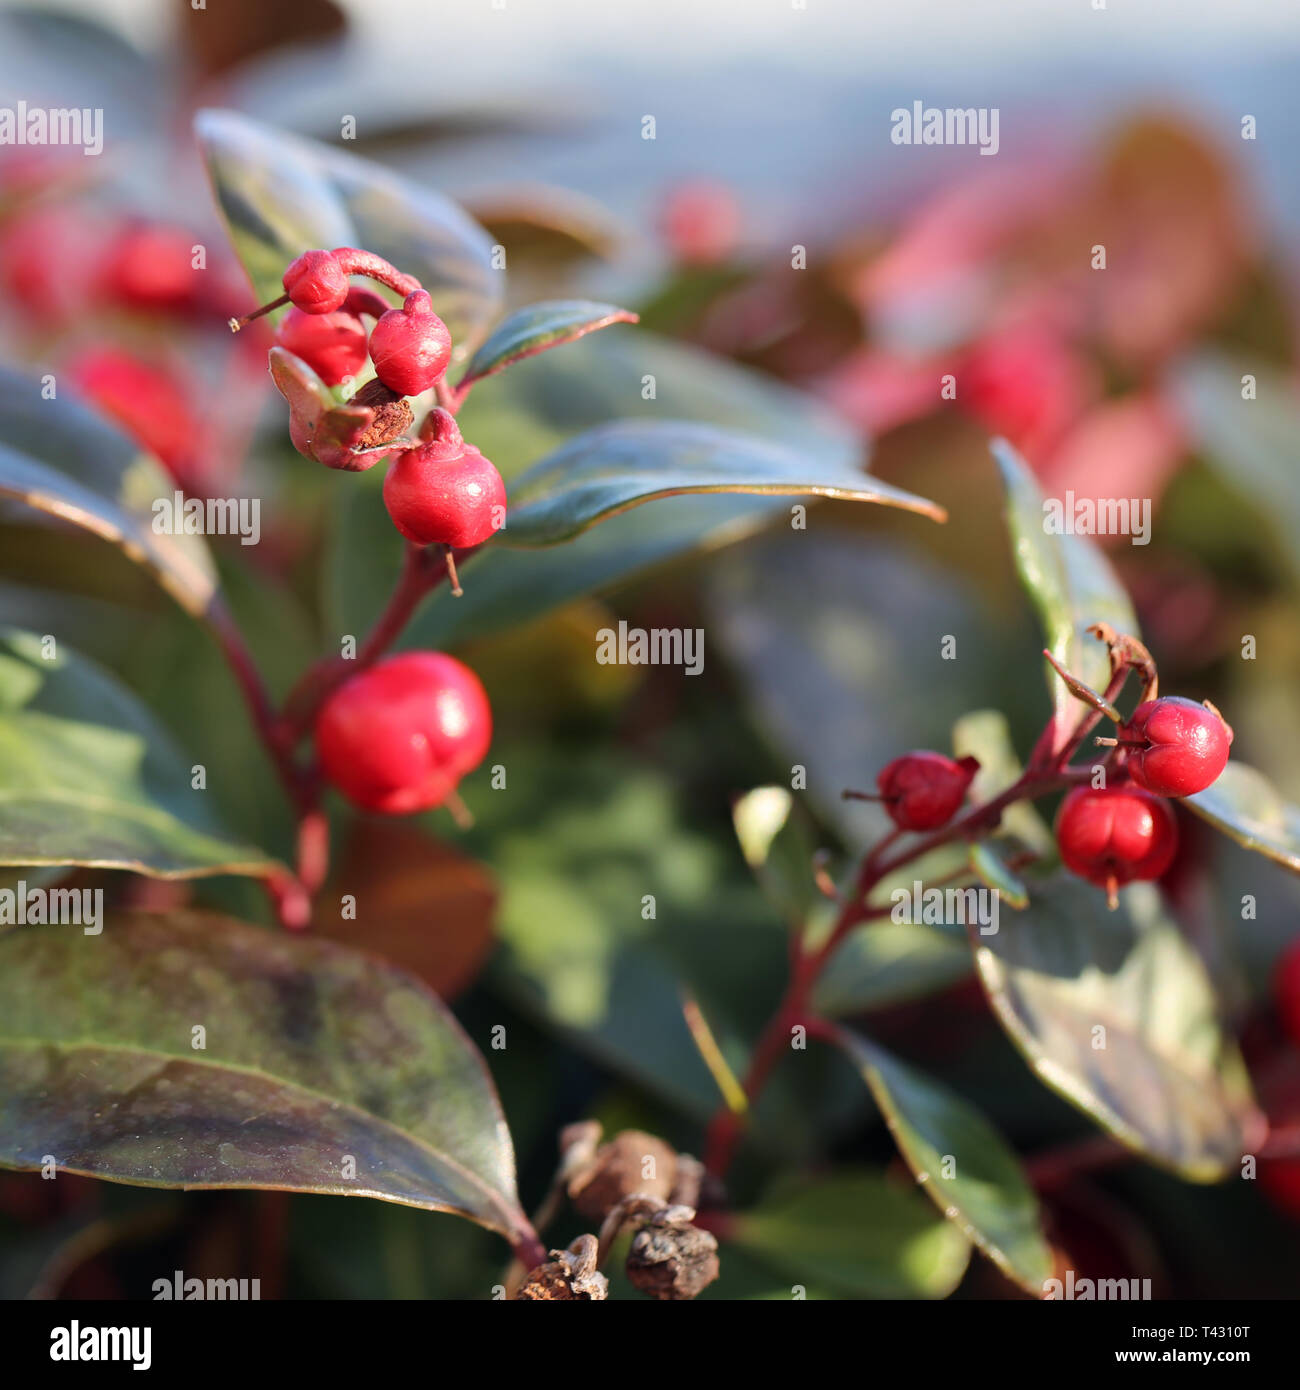 Rote Beeren, die von einem Baum. Der Hintergrund hat schöne Farbe Blätter in Grün, Rot und Orange. Closeup Foto. Farbe Bild. Stockfoto